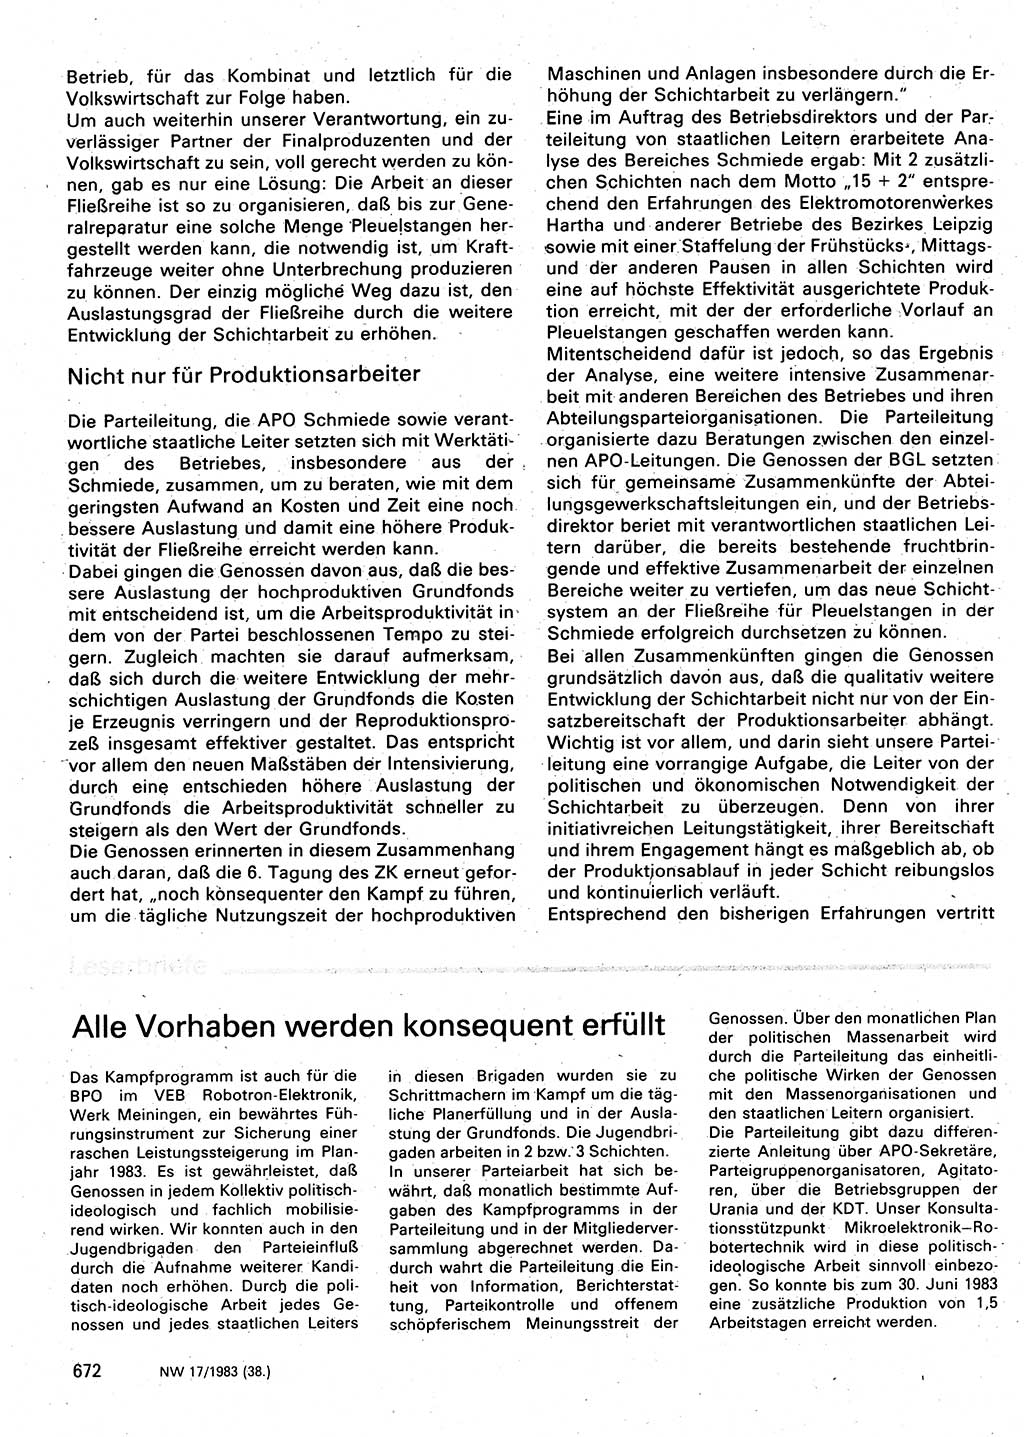 Neuer Weg (NW), Organ des Zentralkomitees (ZK) der SED (Sozialistische Einheitspartei Deutschlands) für Fragen des Parteilebens, 38. Jahrgang [Deutsche Demokratische Republik (DDR)] 1983, Seite 672 (NW ZK SED DDR 1983, S. 672)